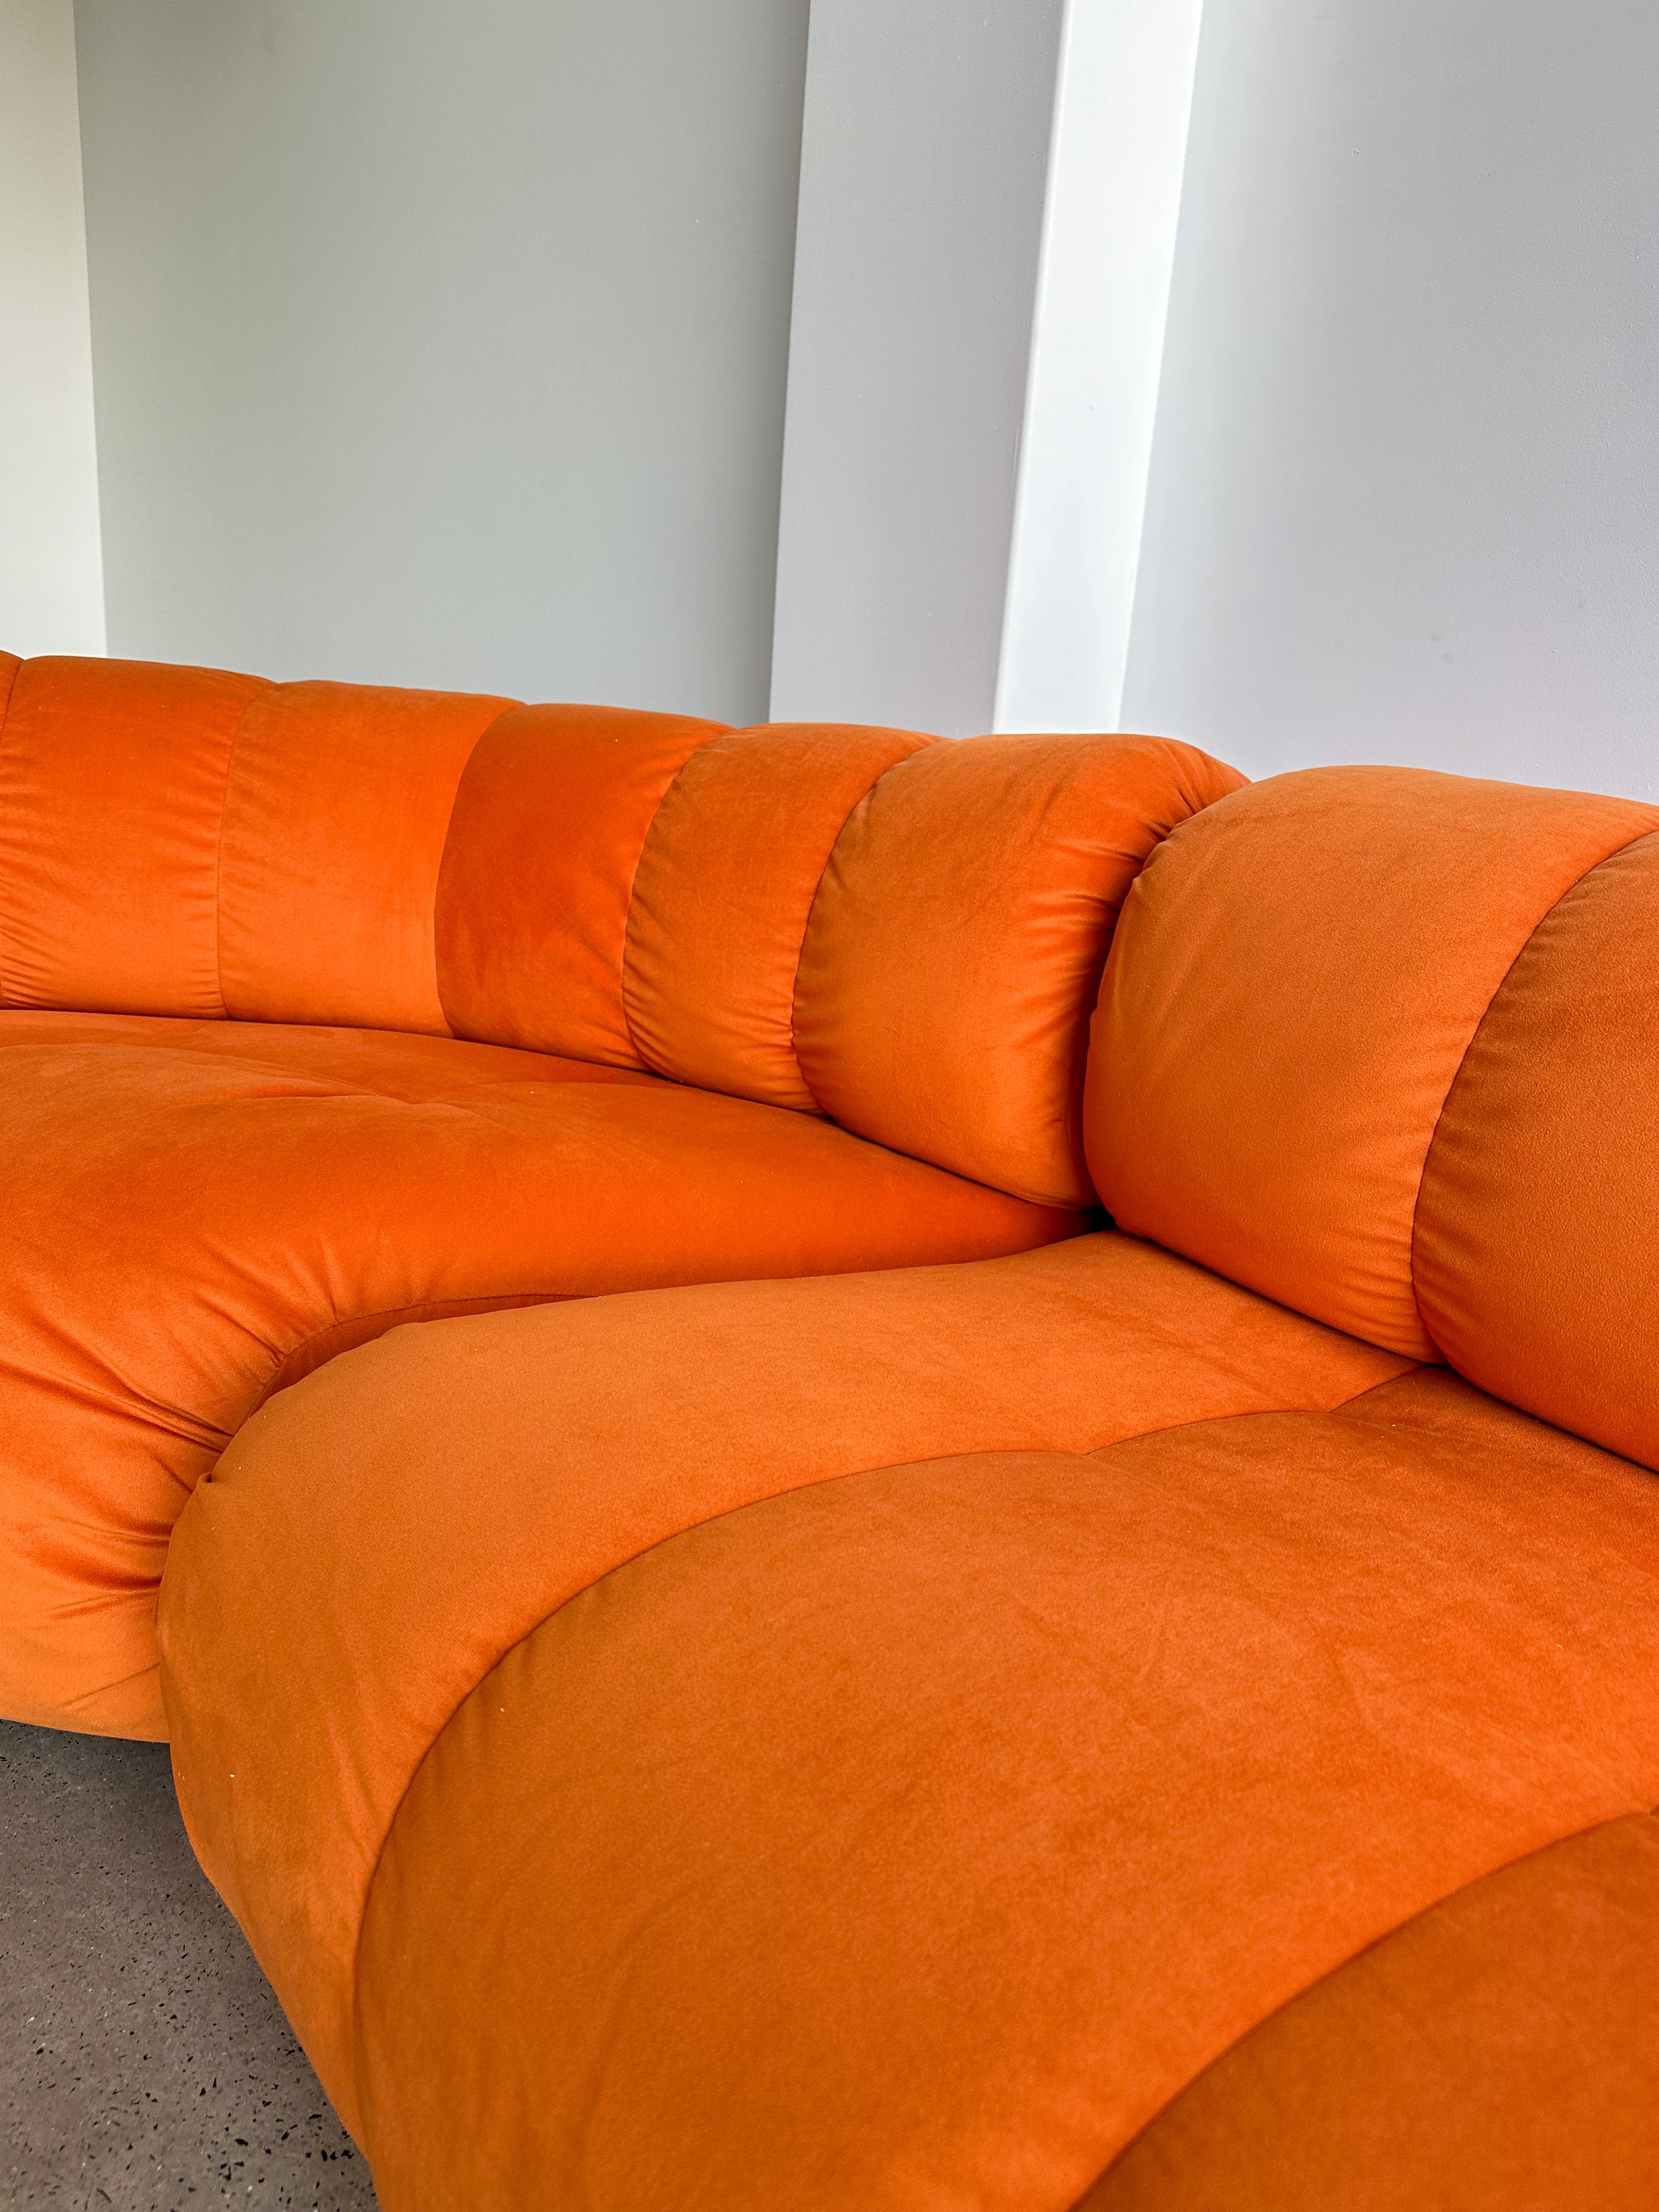 modular orange couch